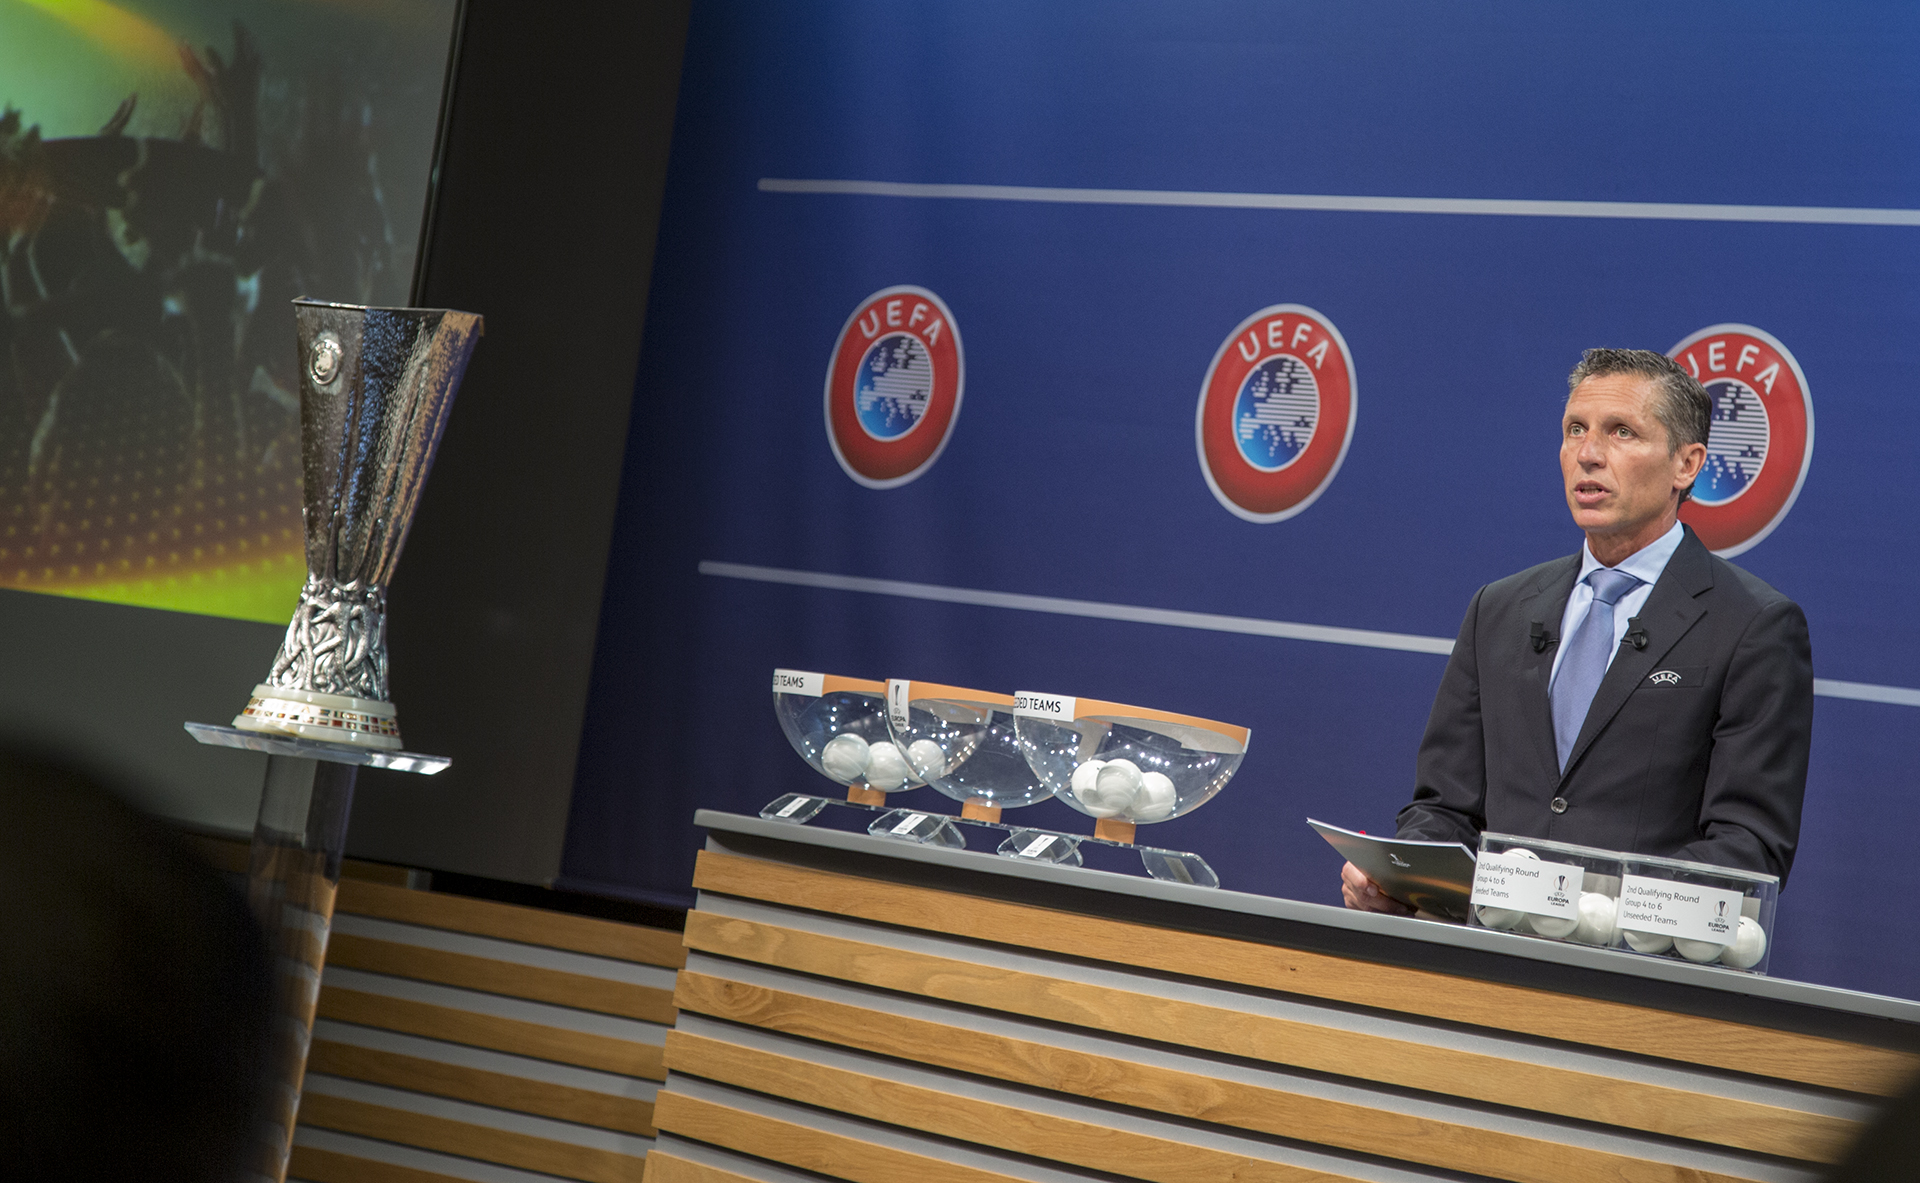 The Europa League draw at UEFA Headquarters | © NCM Media